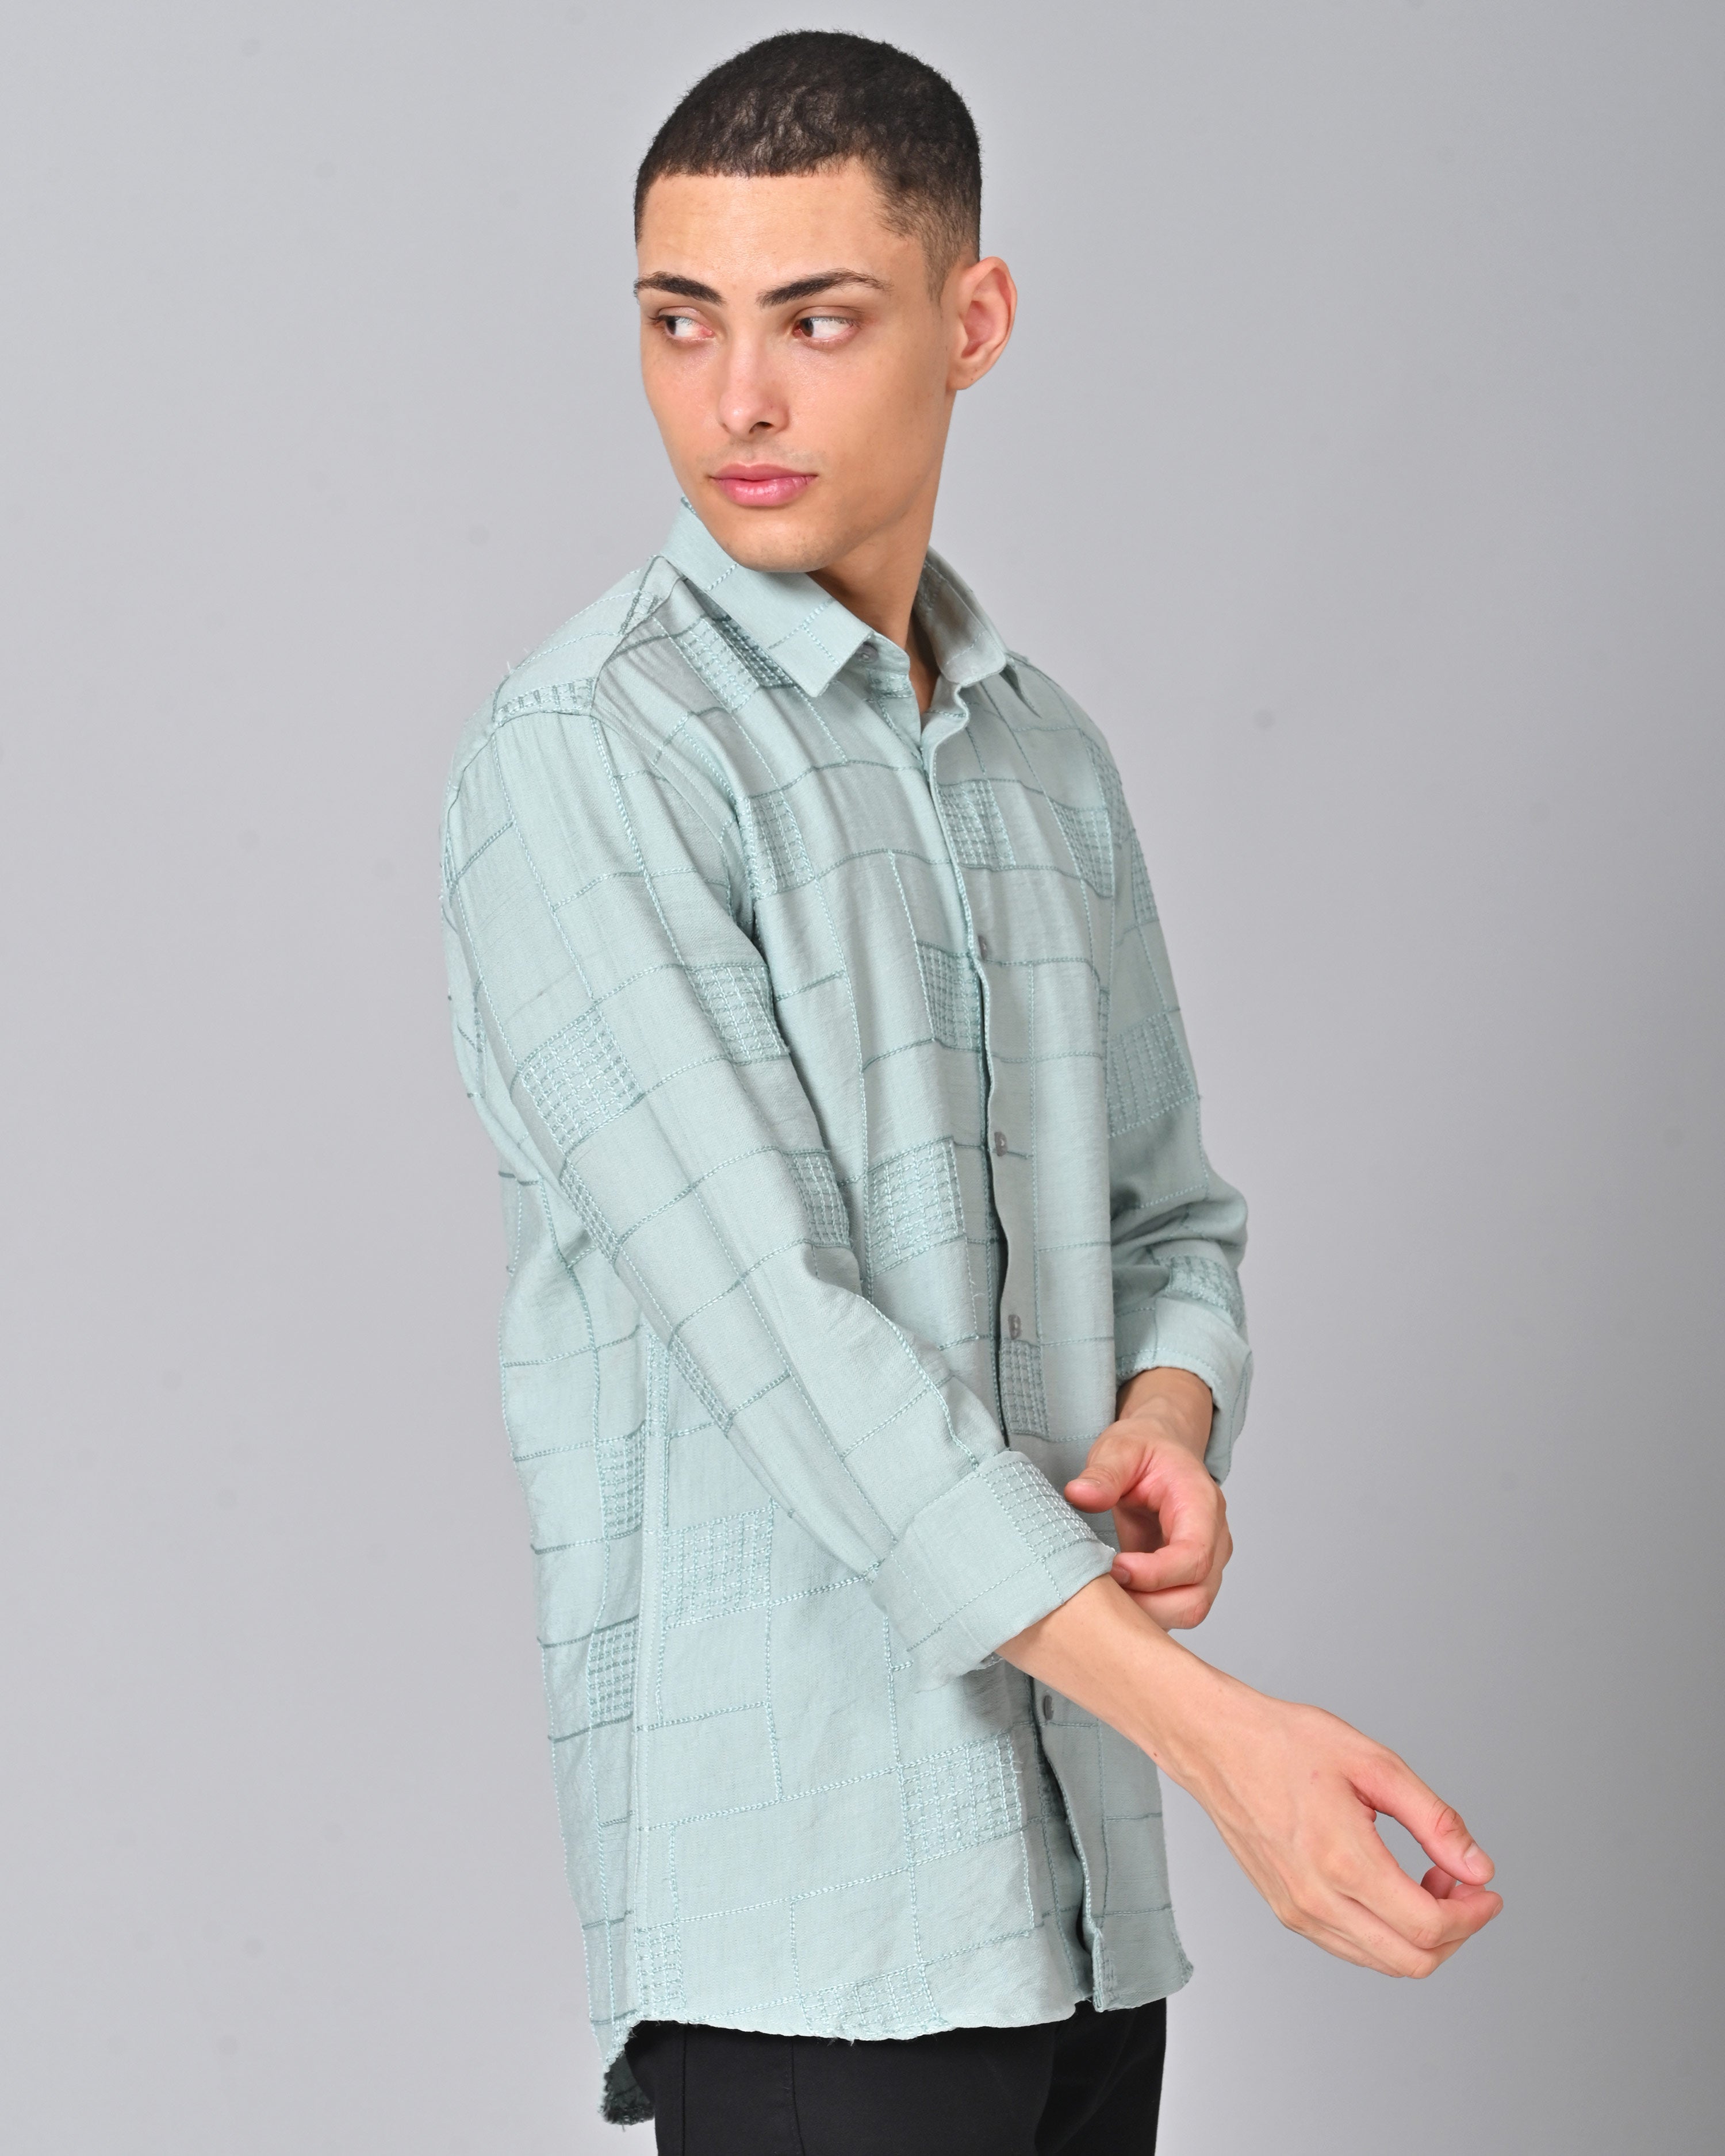 Buy Men's Embroidered Misty Blue Shirt Online